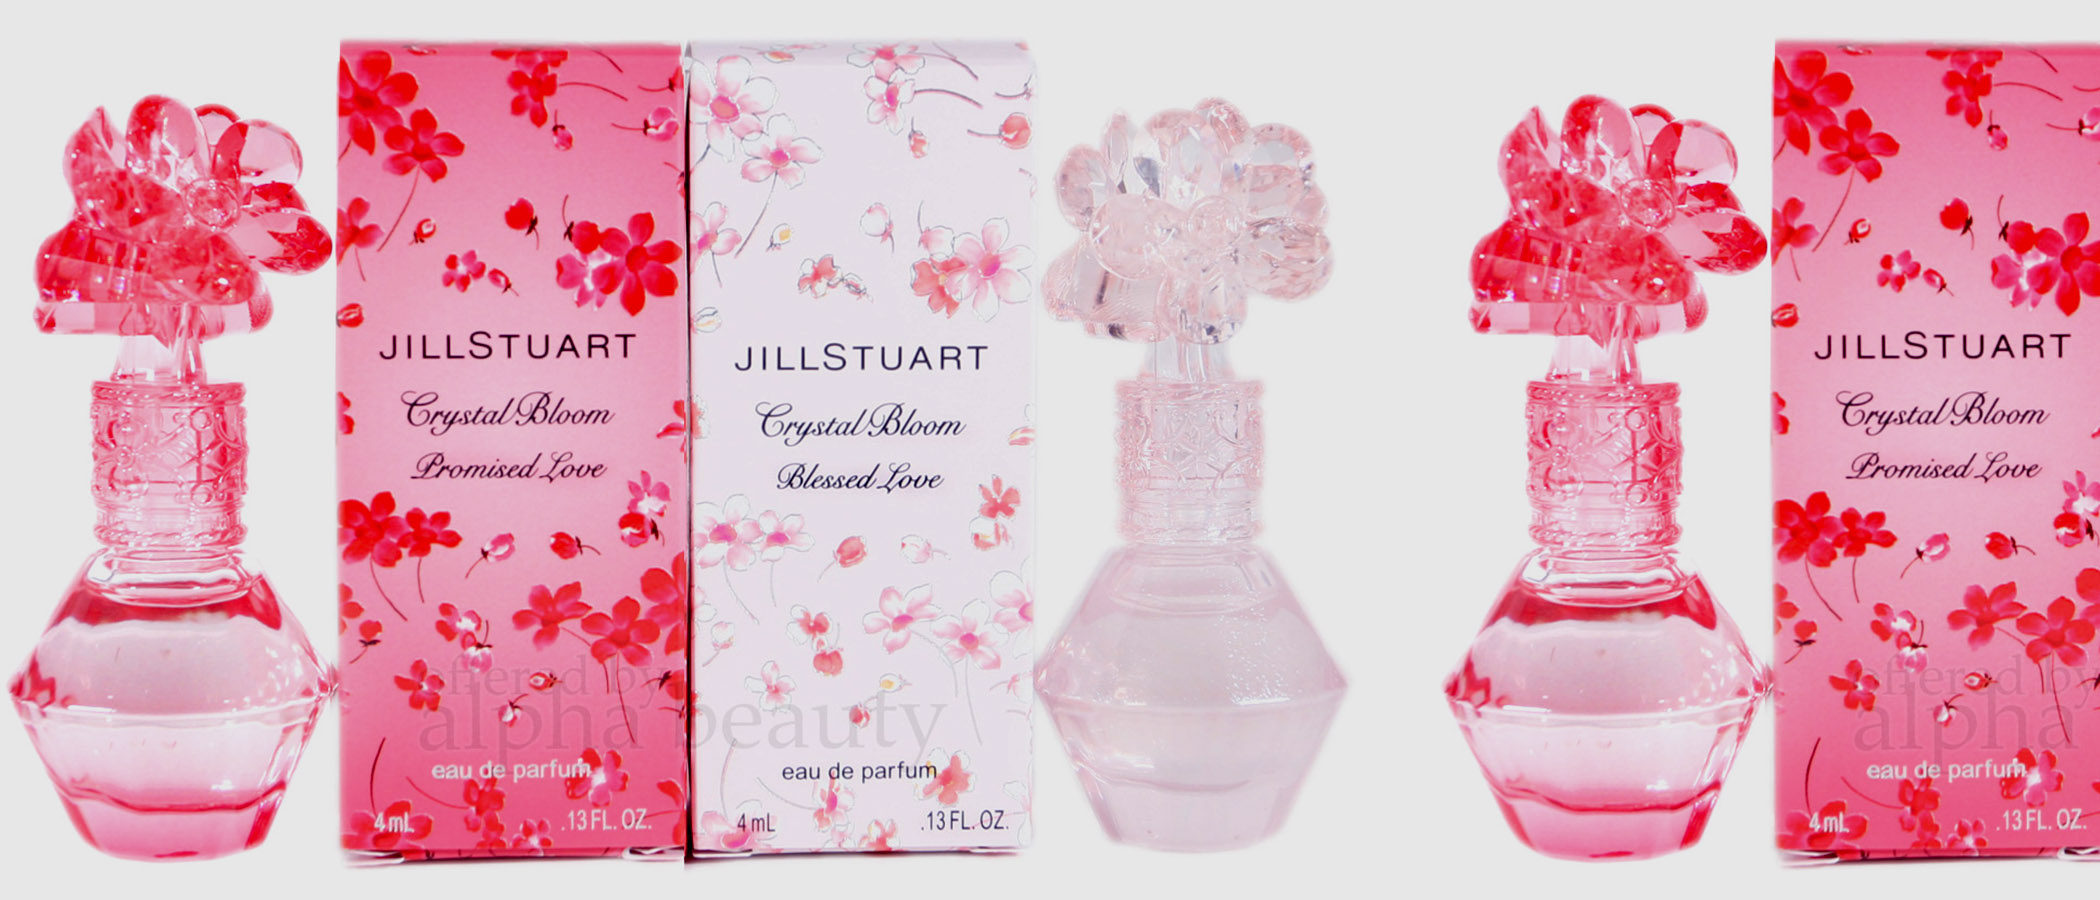 Jill Stuart presenta dos ediciones limitadas de la colección 'Crystal Bloom': 'Blessed Love' y 'Promised Love'